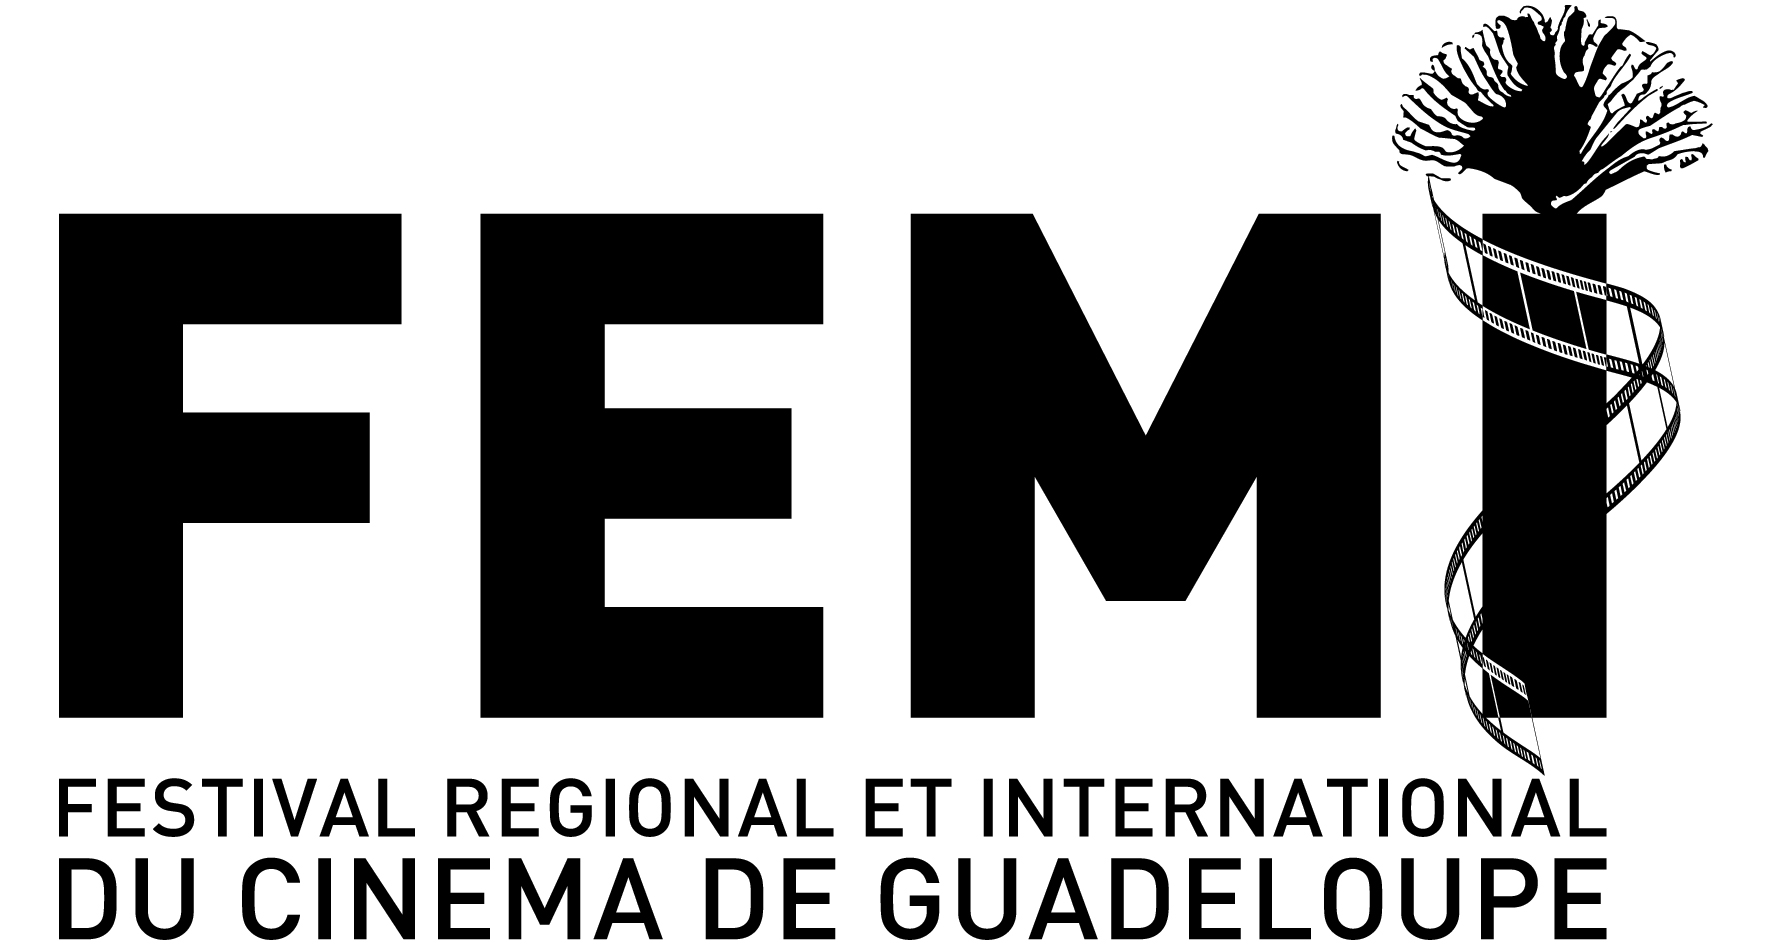 Guadeloupe: Présentation du 21ème Festival Régional et International du Cinéma de Guadeloupe (FEMI)